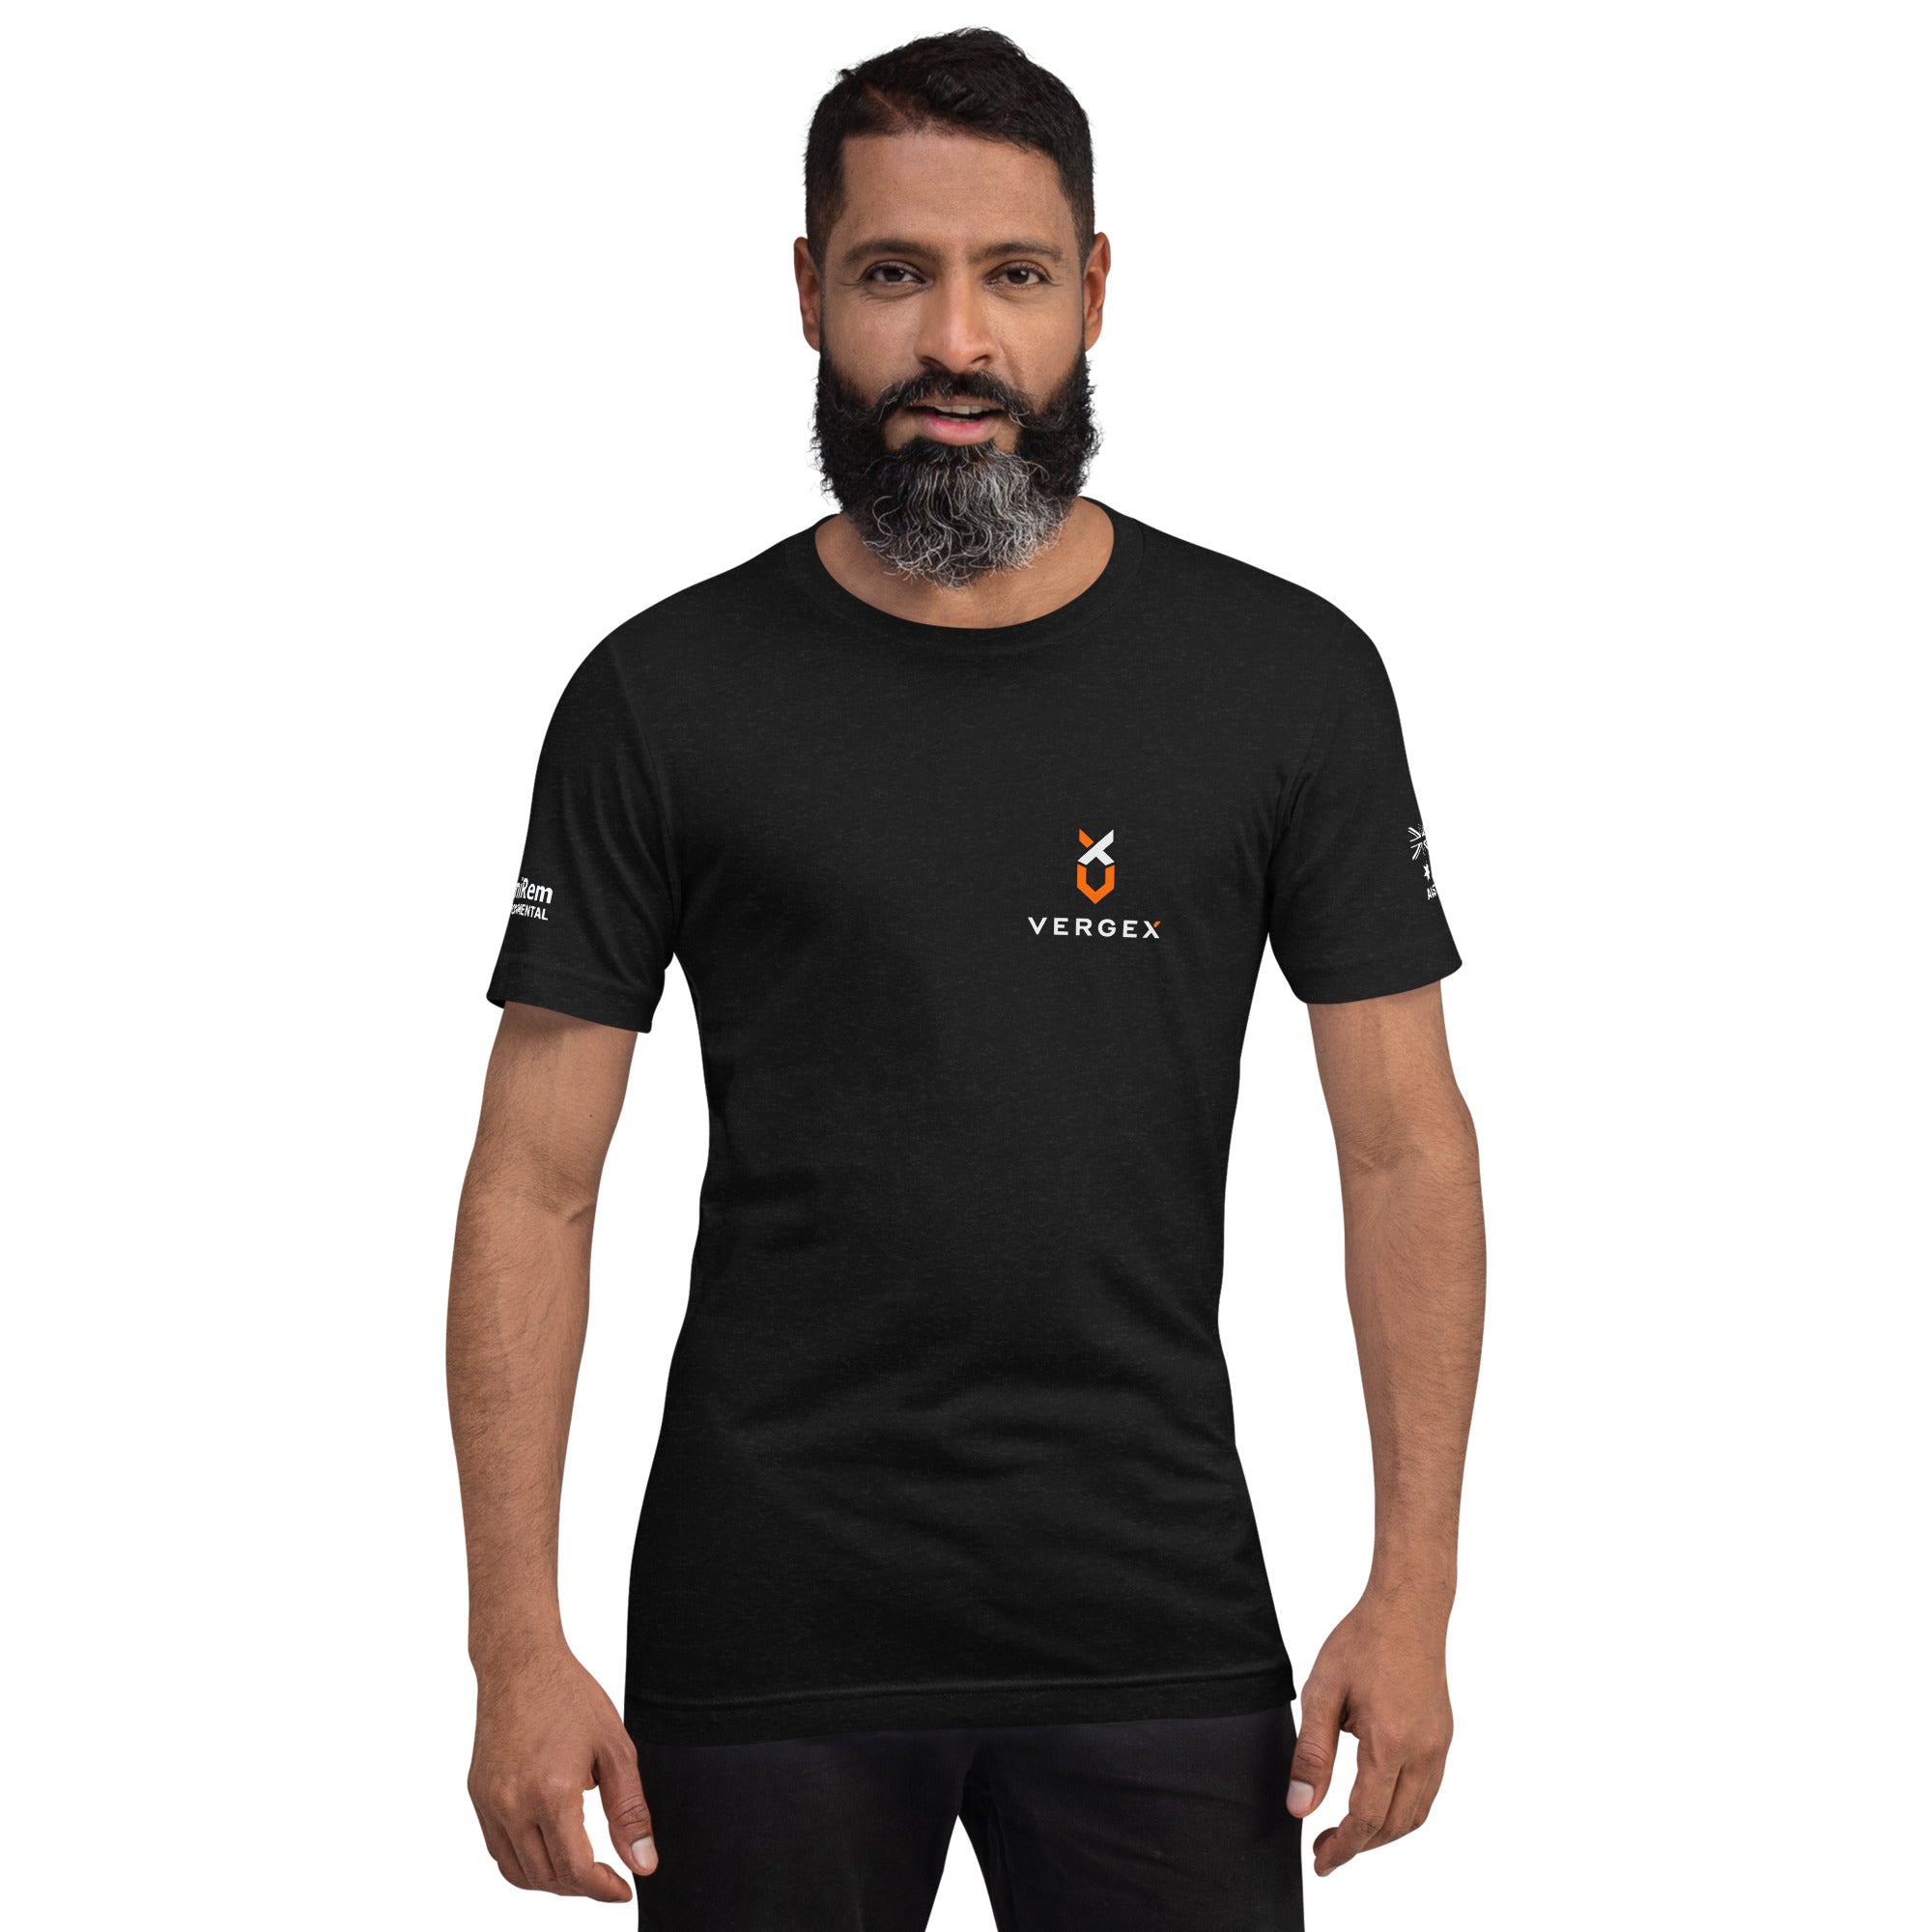 Vergex Unisex t-shirt